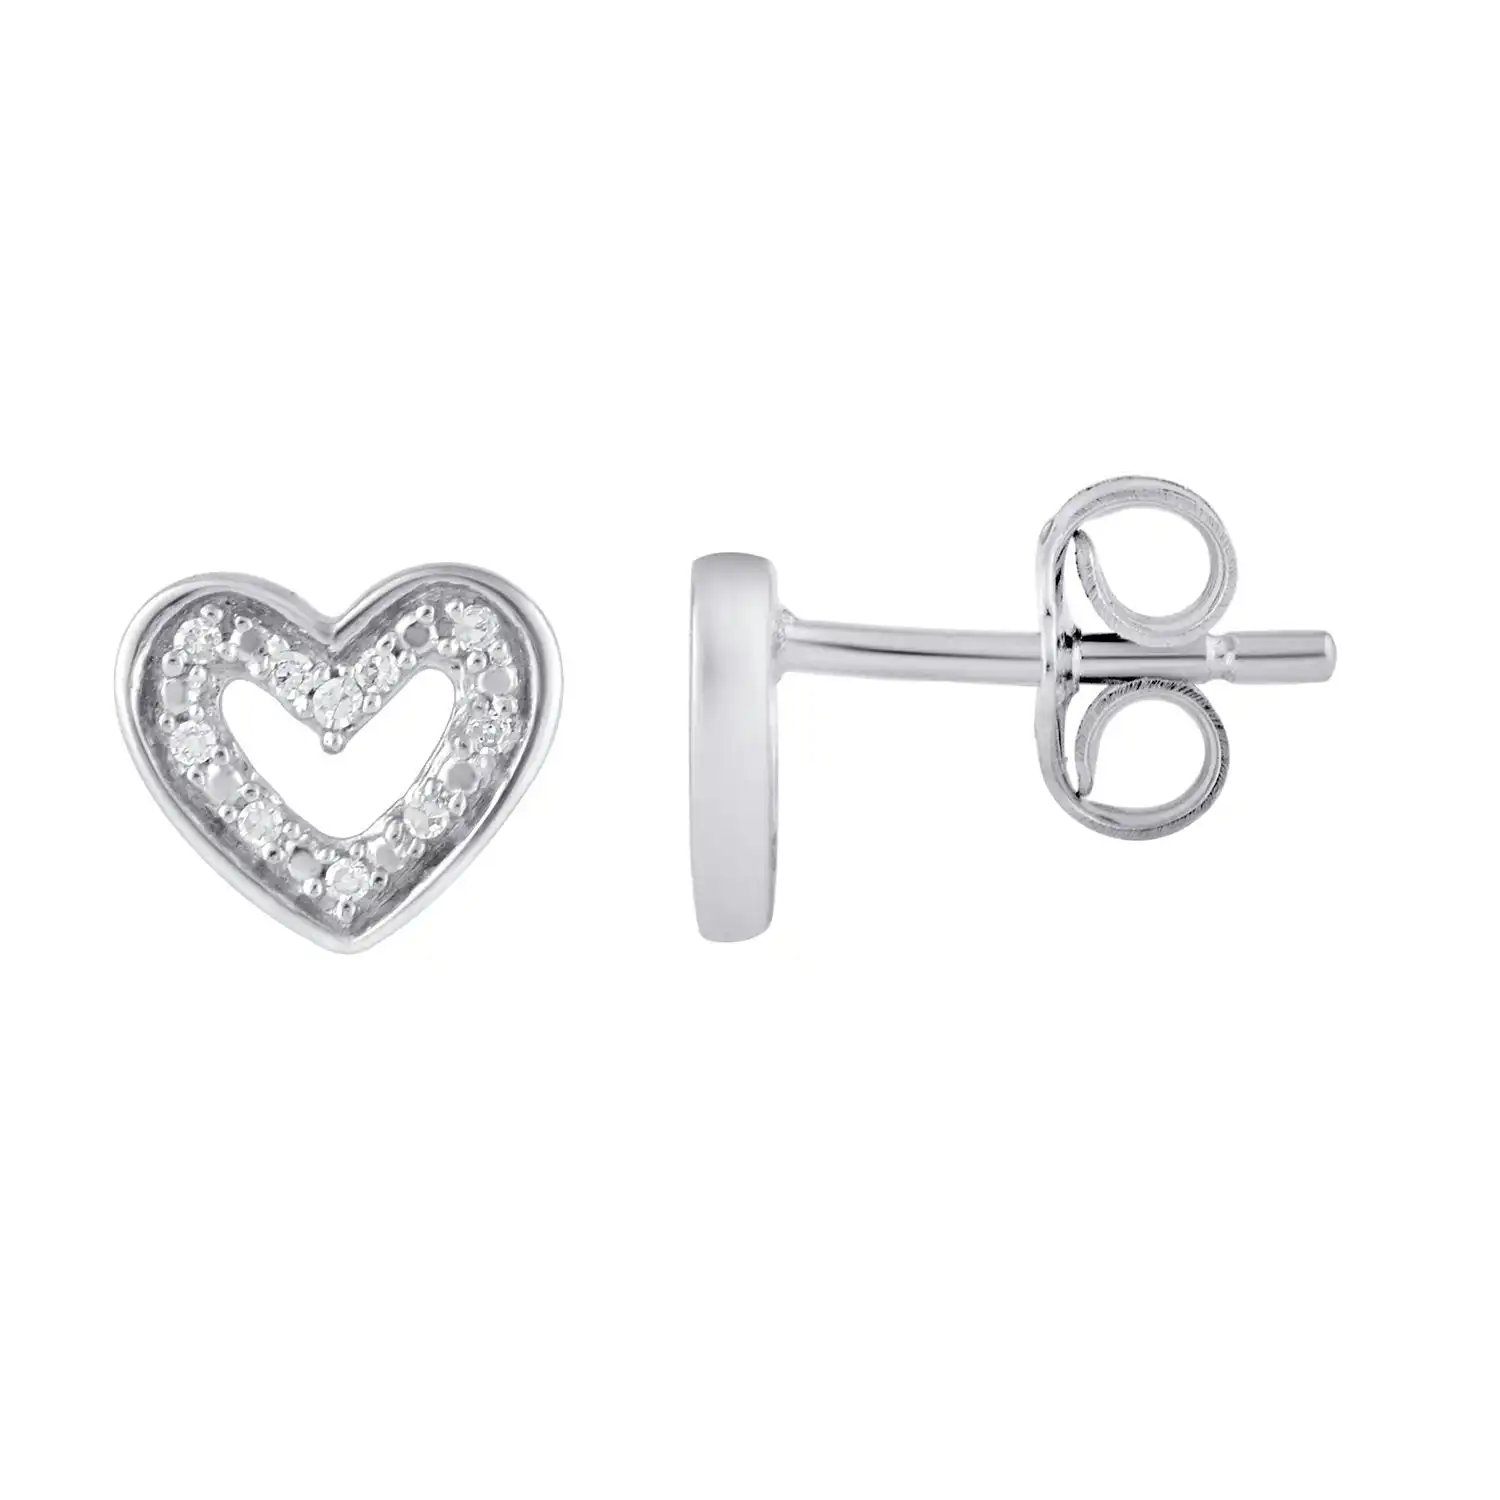 Mirage Diamond Set Open Heart Stud Earrings in Sterling Silver